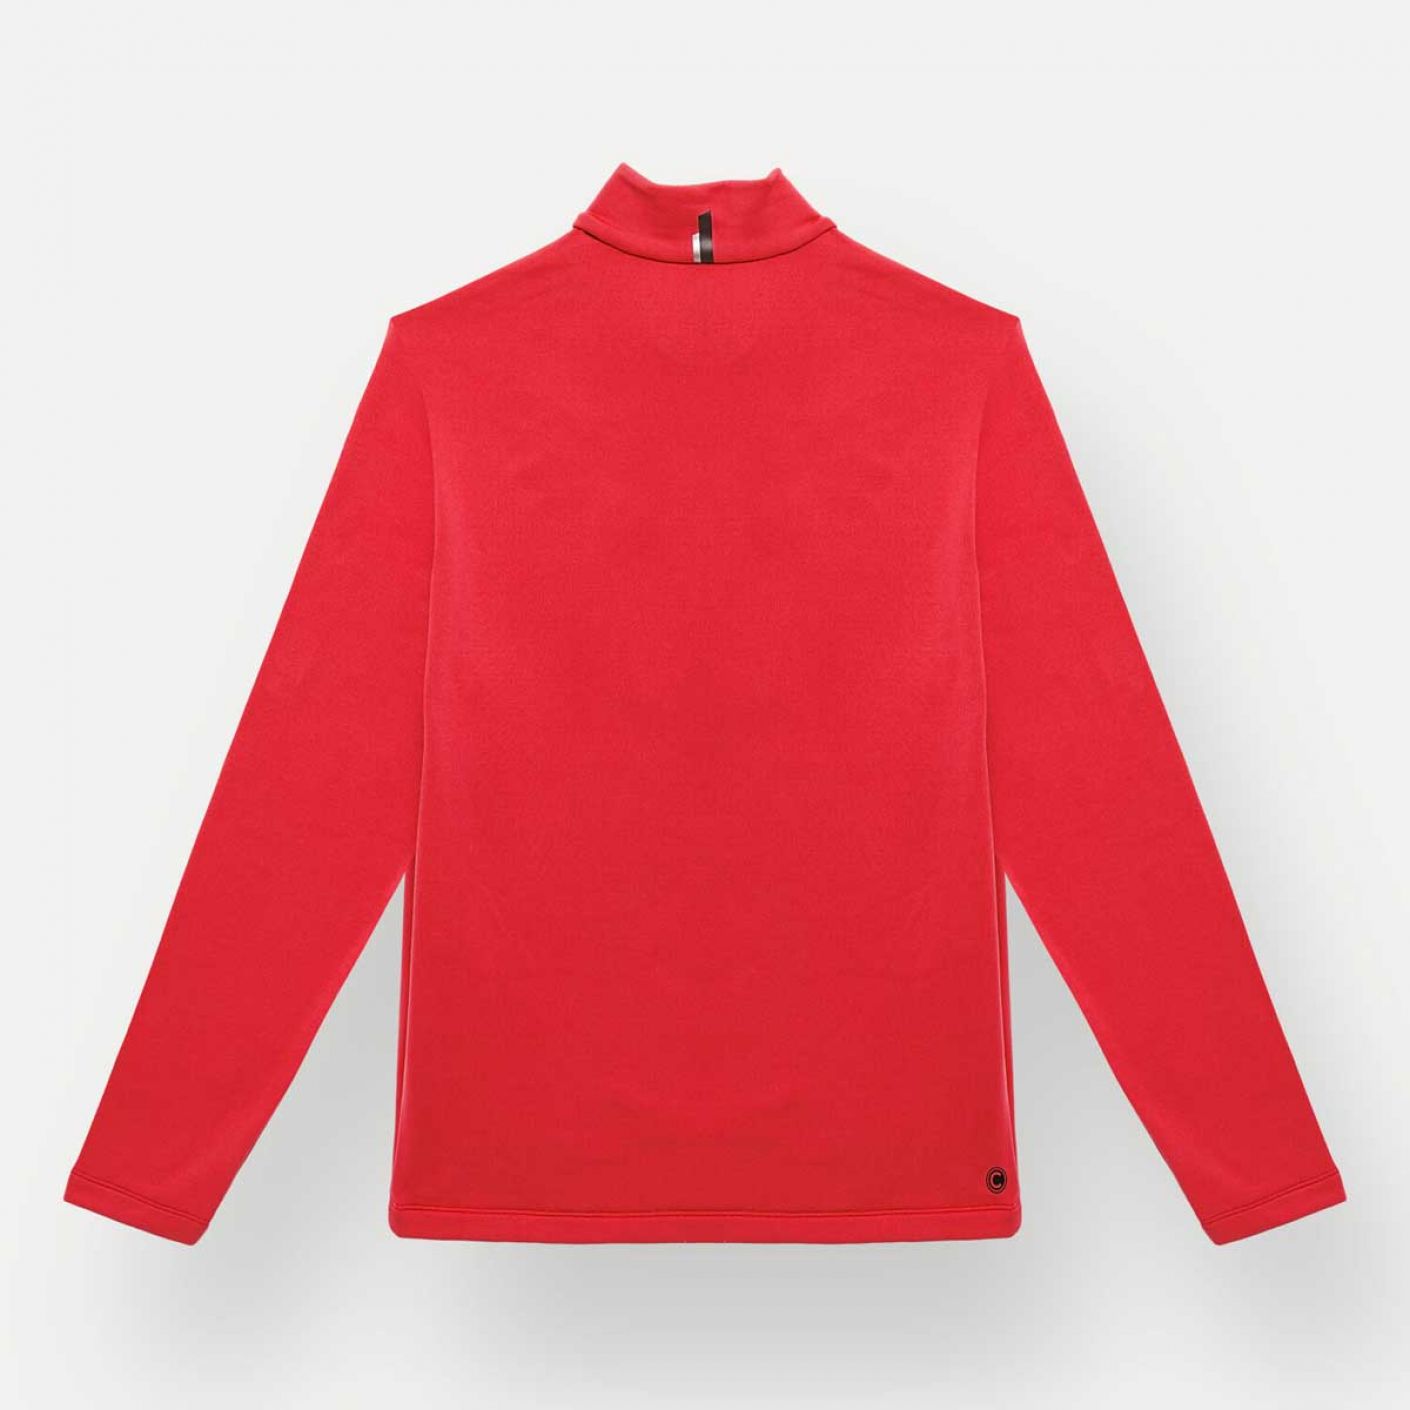 Colmar Men's Ski Sweatshirt with Red Zip